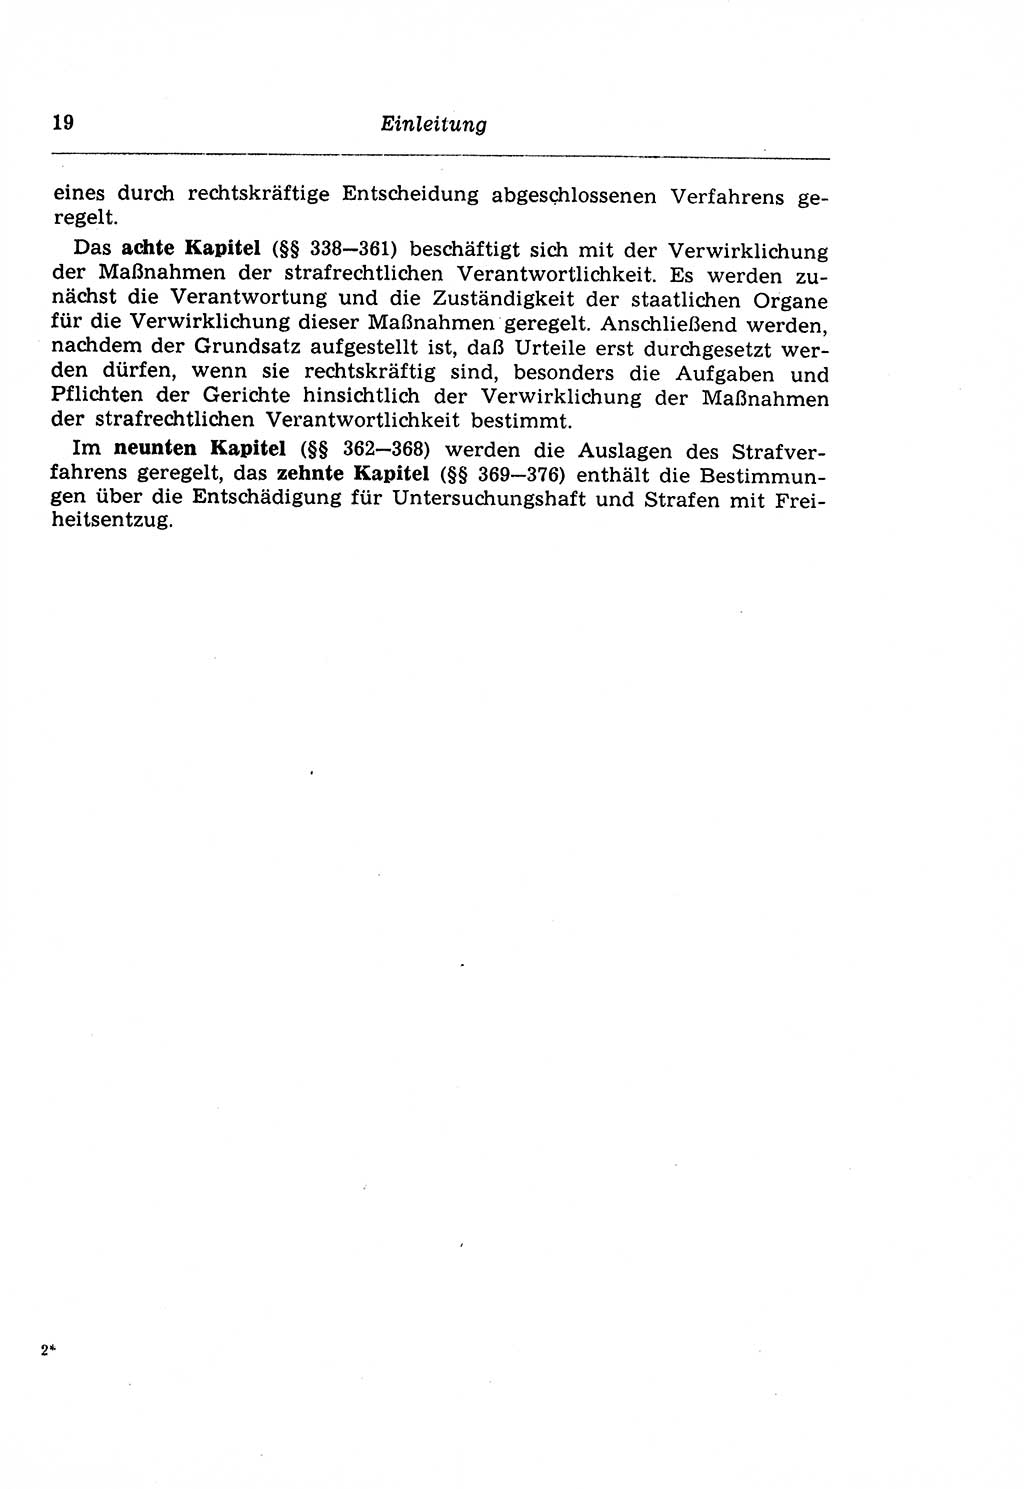 Strafprozeßrecht der DDR (Deutsche Demokratische Republik), Lehrkommentar zur Strafprozeßordnung (StPO) 1968, Seite 19 (Strafprozeßr. DDR Lehrkomm. StPO 19688, S. 19)